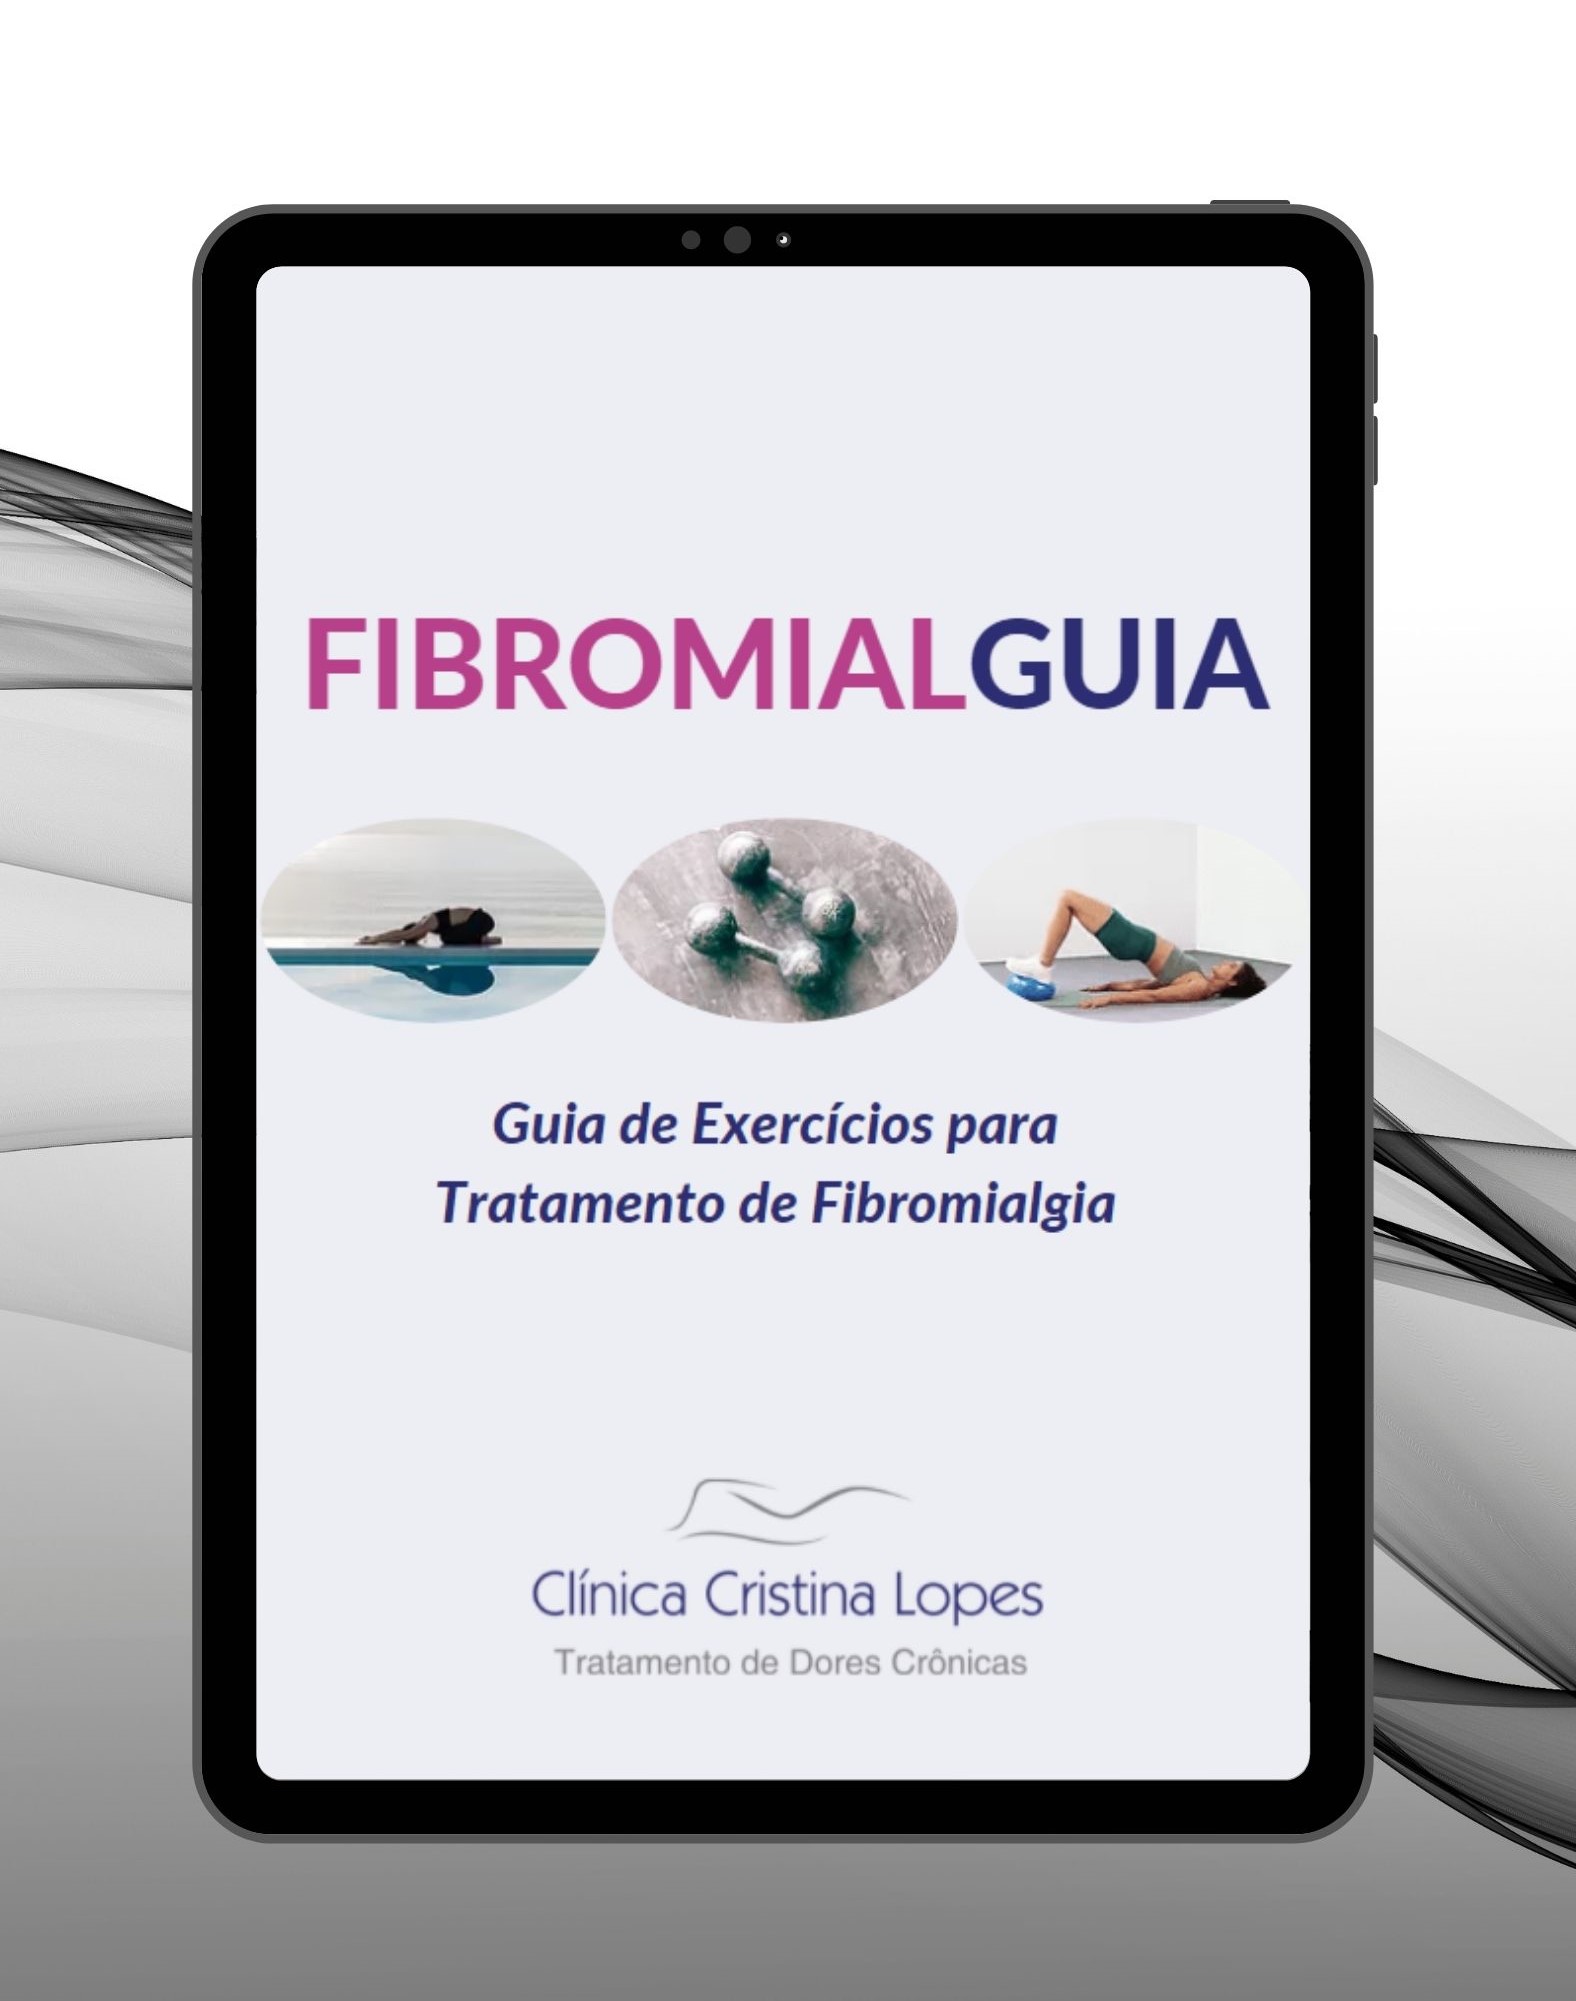 FIBROMIALGUIA - Guia de Exercícios para Tratamento de Fibromialgia